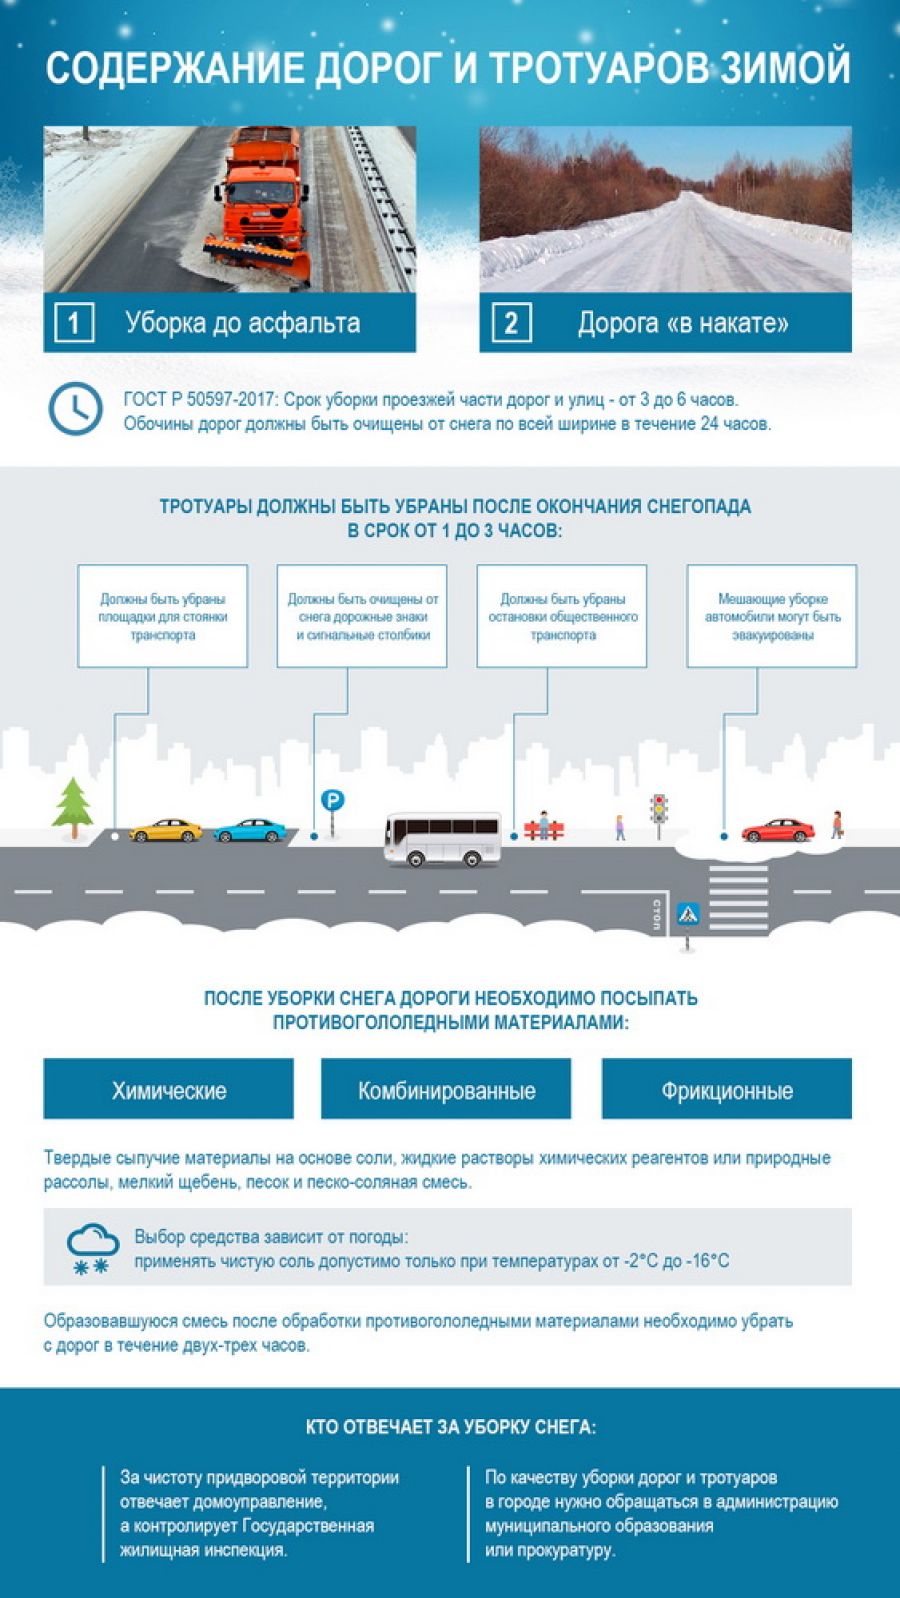 Как должны чистить дороги зимой, рассказали эксперты ОНФ